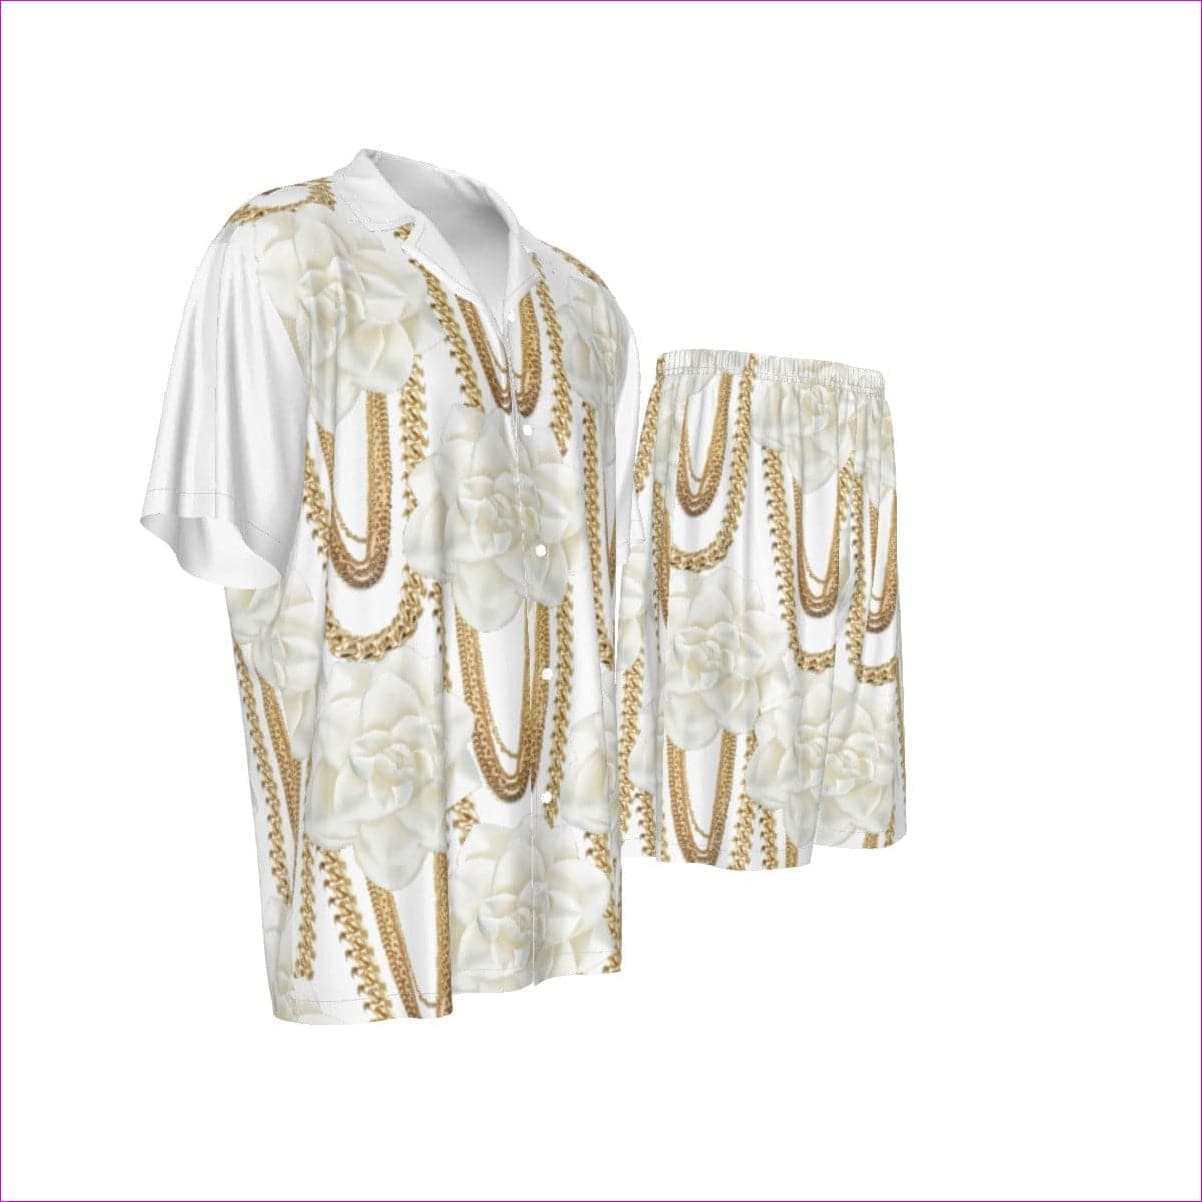 - Floral Chain Men's Imitation Silk Shirt Suit - mens top & short set at TFC&H Co.